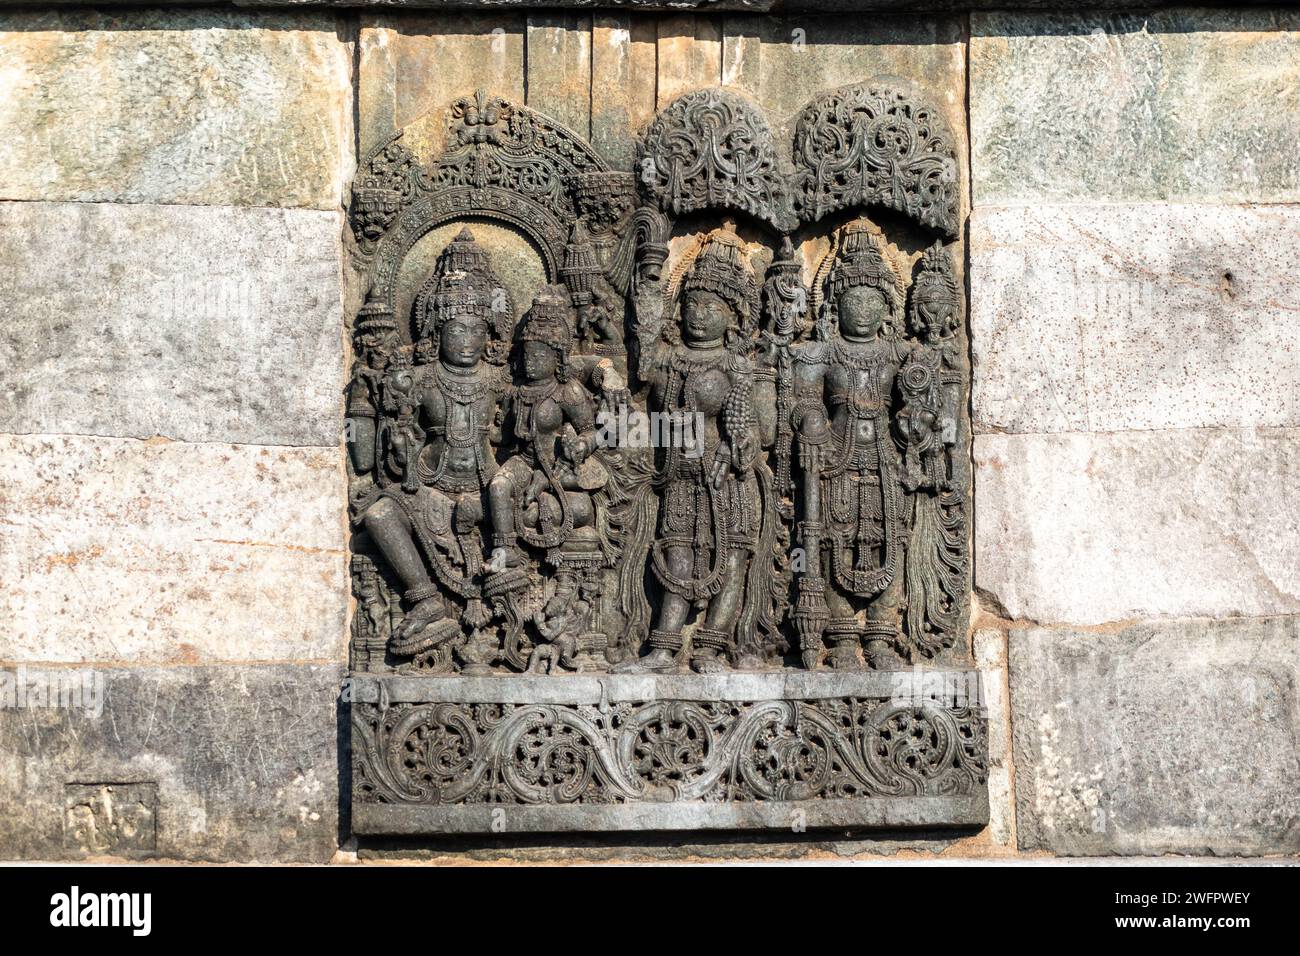 Kunstvolle Schnitzereien einer hinduistischen Gottheit im alten Chennakeshava-Tempel aus der Hoysala-Zeit in Belur, Karnataka. Stockfoto